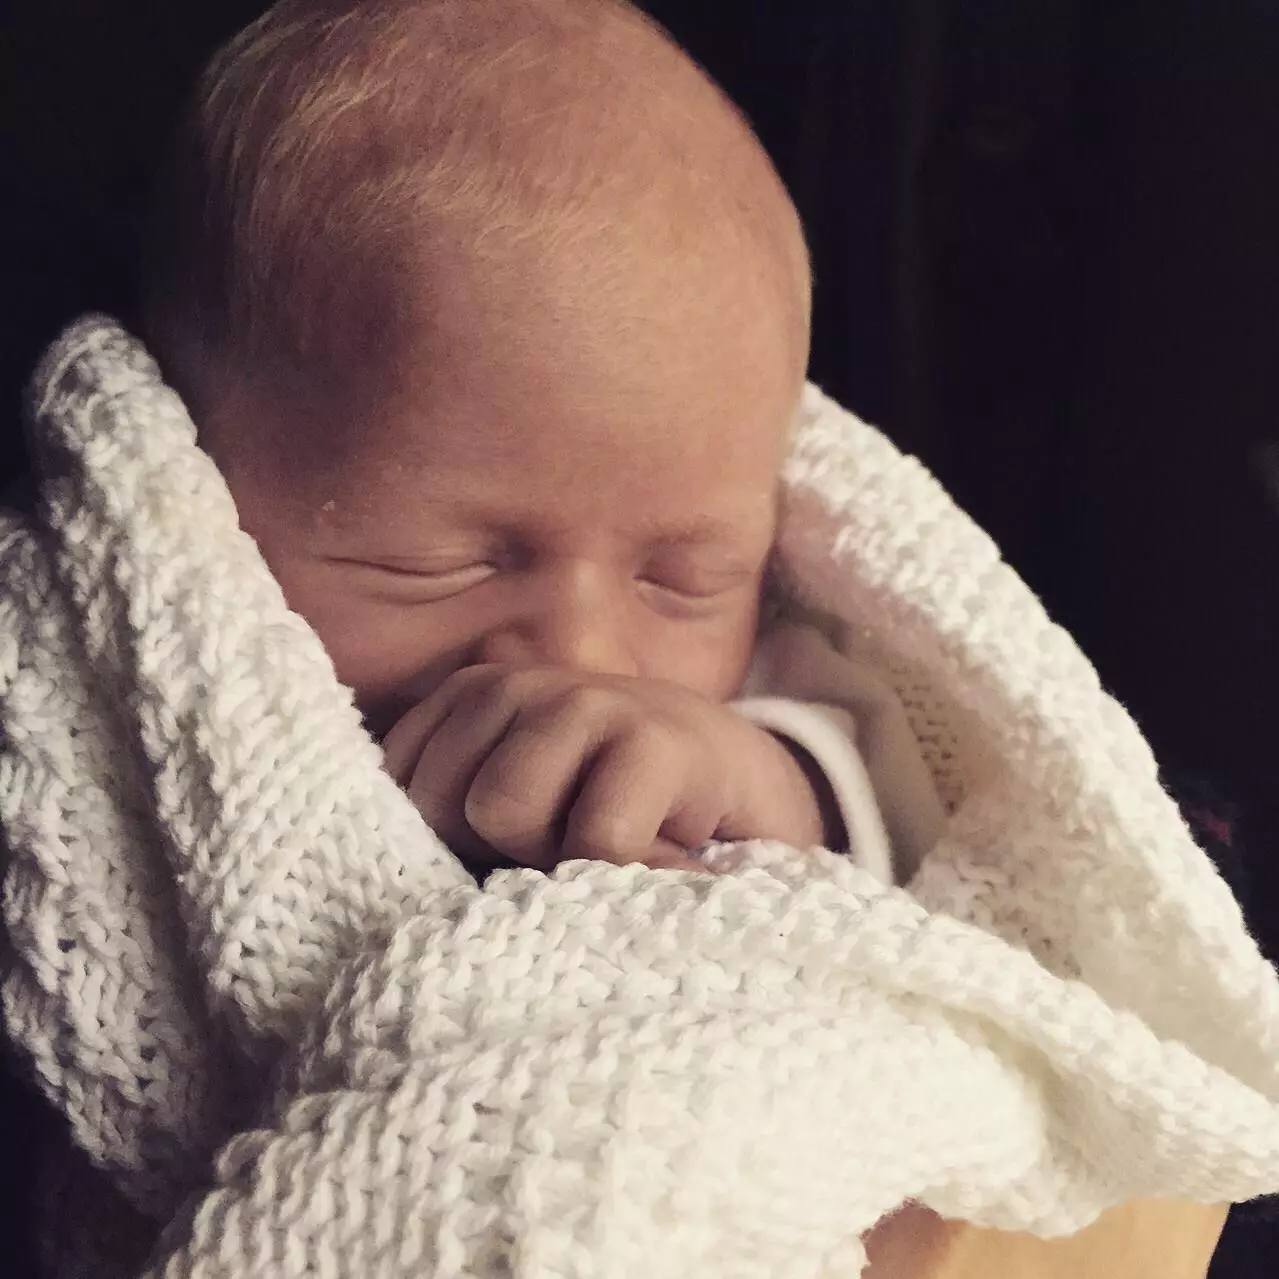 Baby Arthur was born on 6th January 2015. (